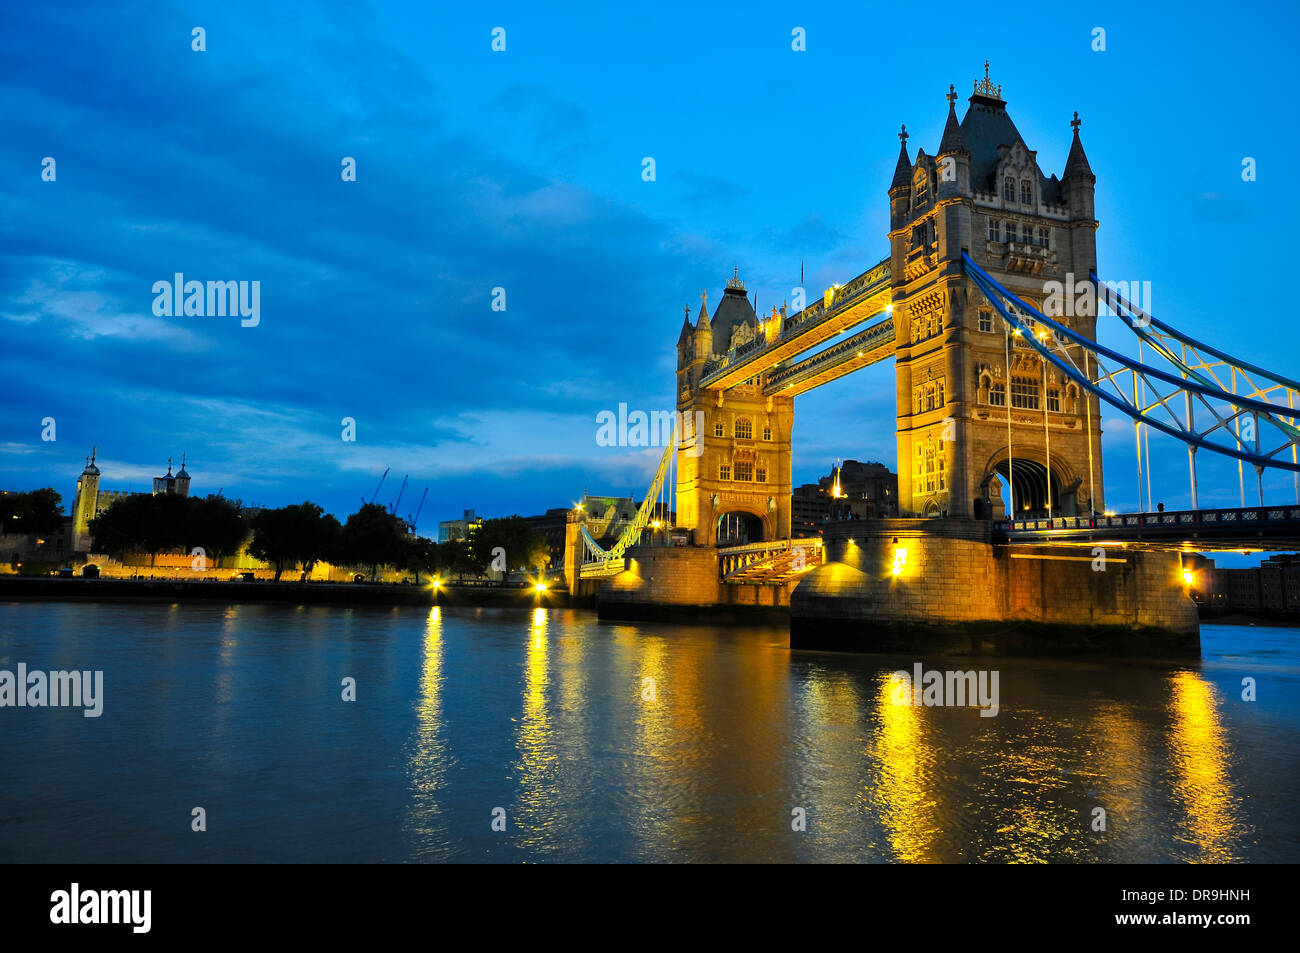 Illuminated London Bridge at night Stock Photo